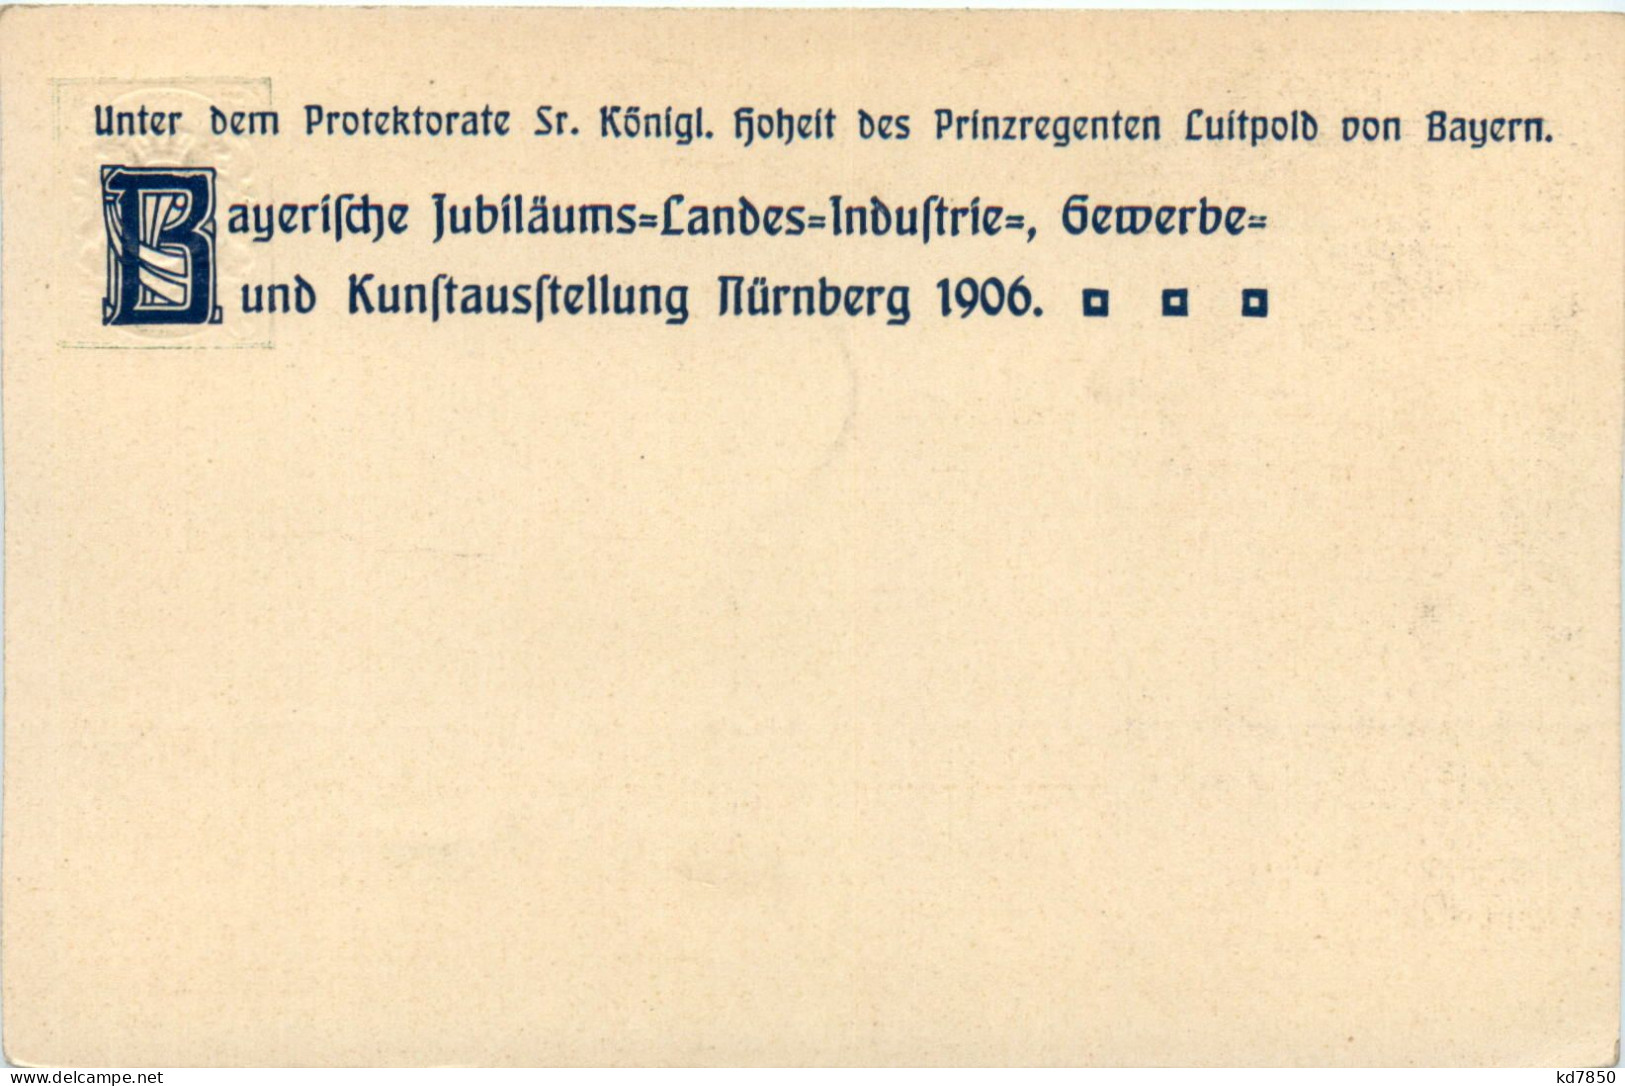 Nürnberg - Industrie Und Kunstausstellung 1906 - Ganzsache - Nuernberg